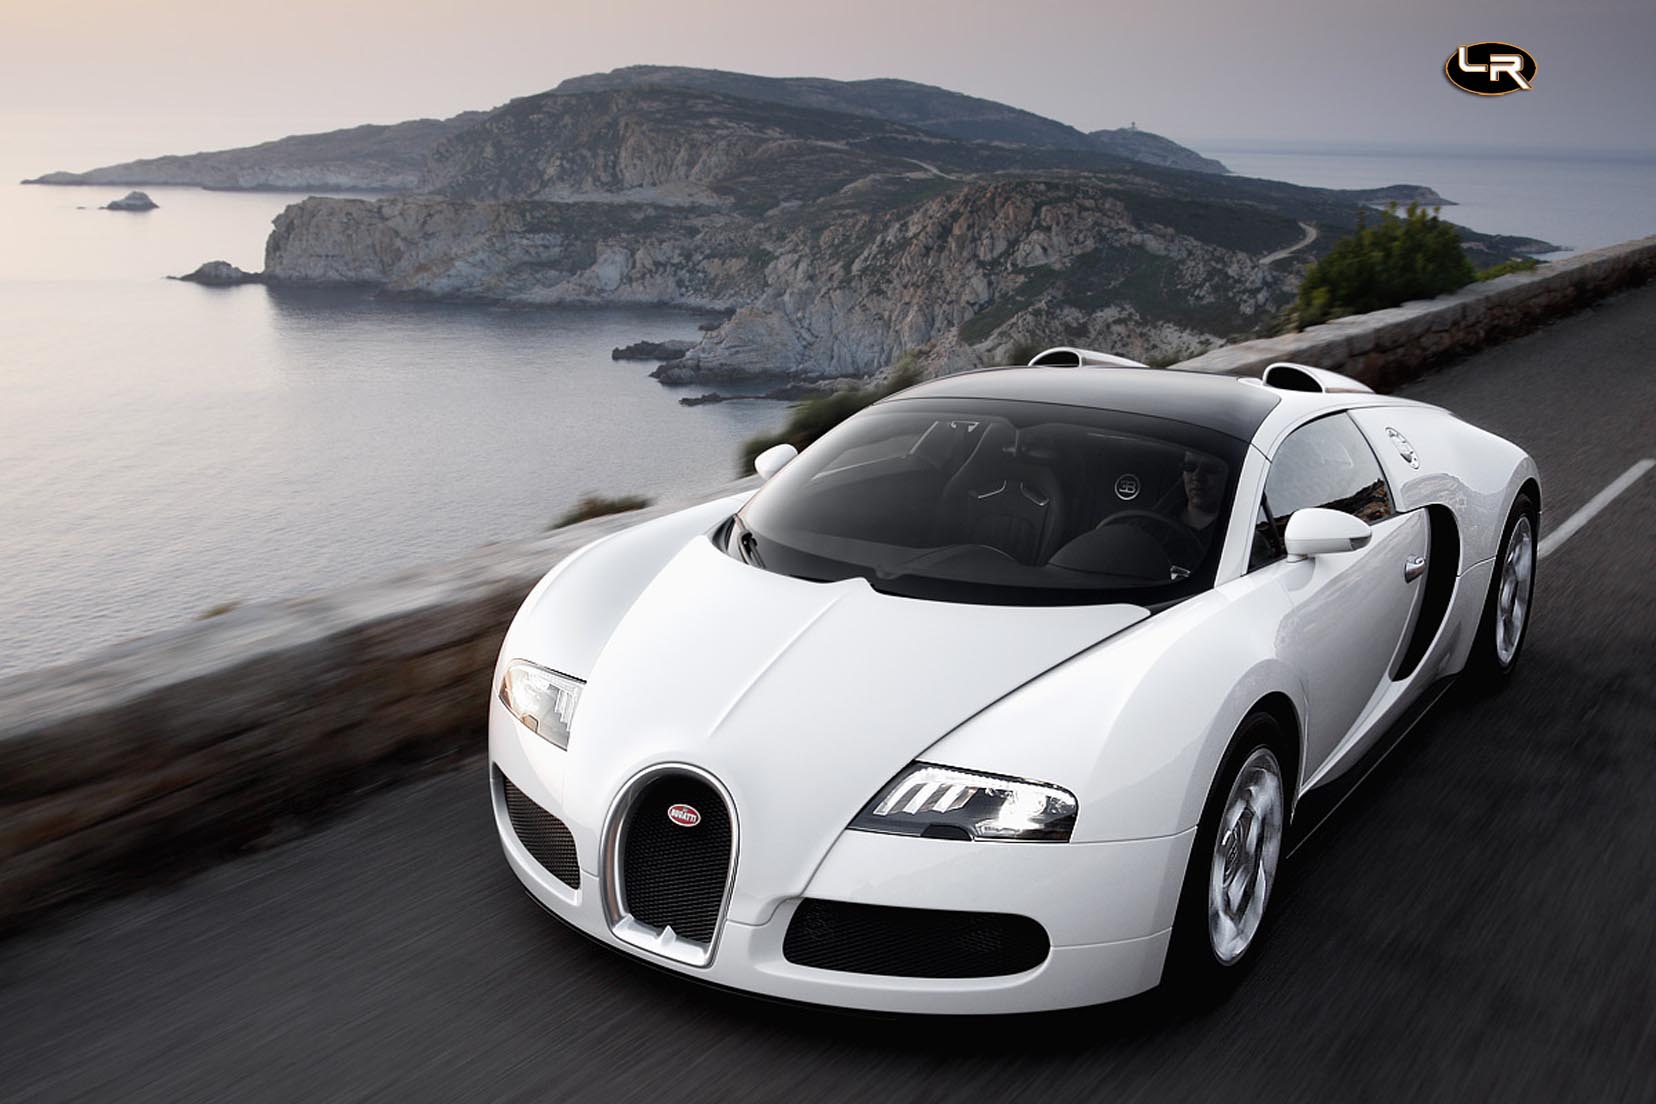 Image principale de l'actu: Bugatti veyron grand sport le seche cheveux a 400 km h 